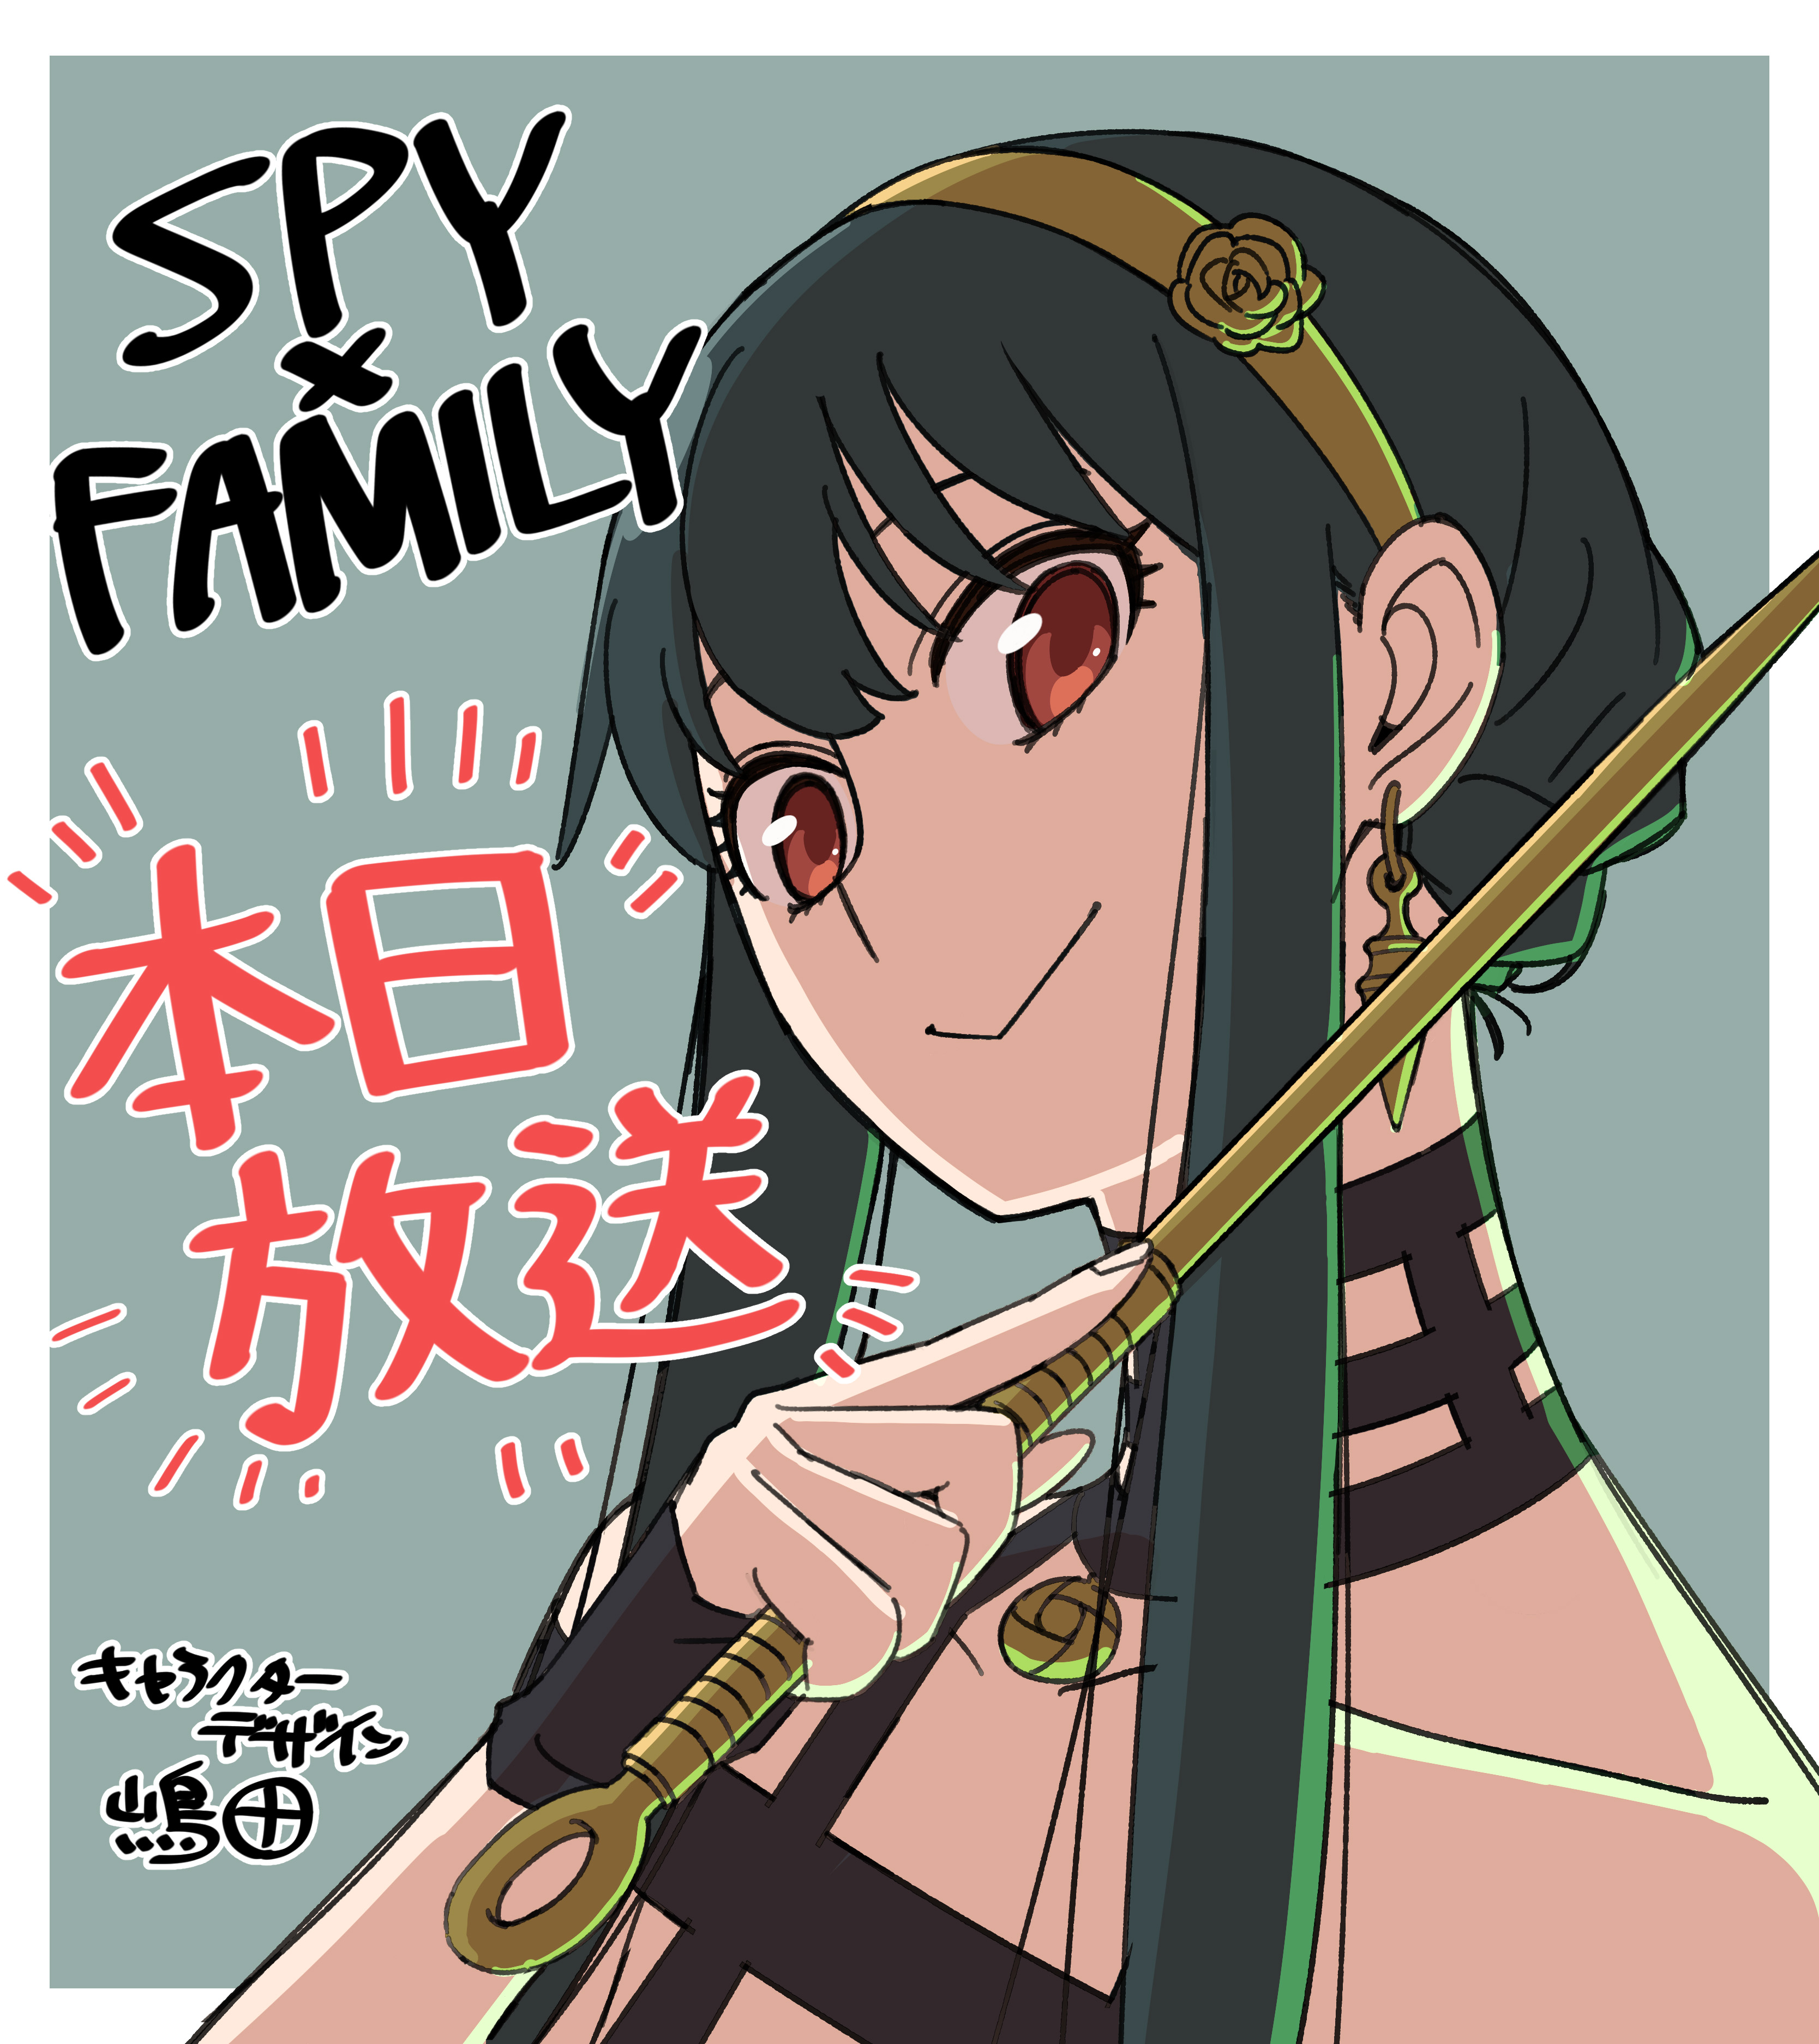 Spy x Family Season 2 Countdown Illustration